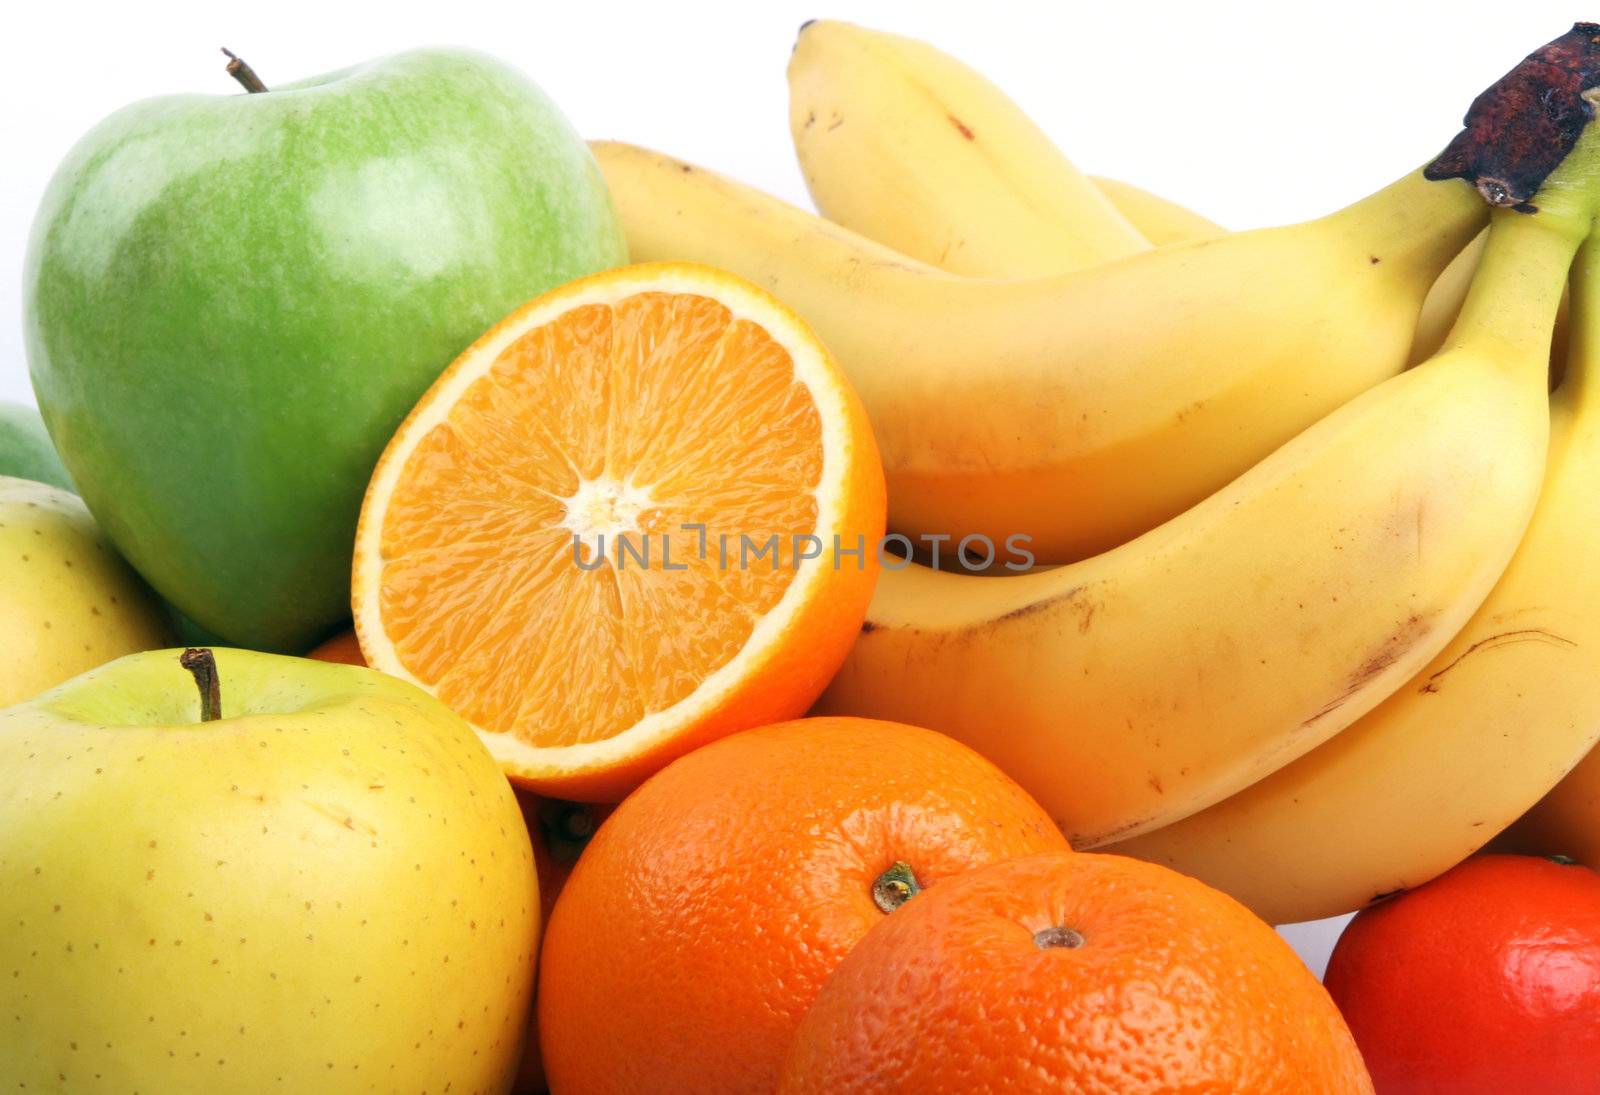 Fruits by vilevi